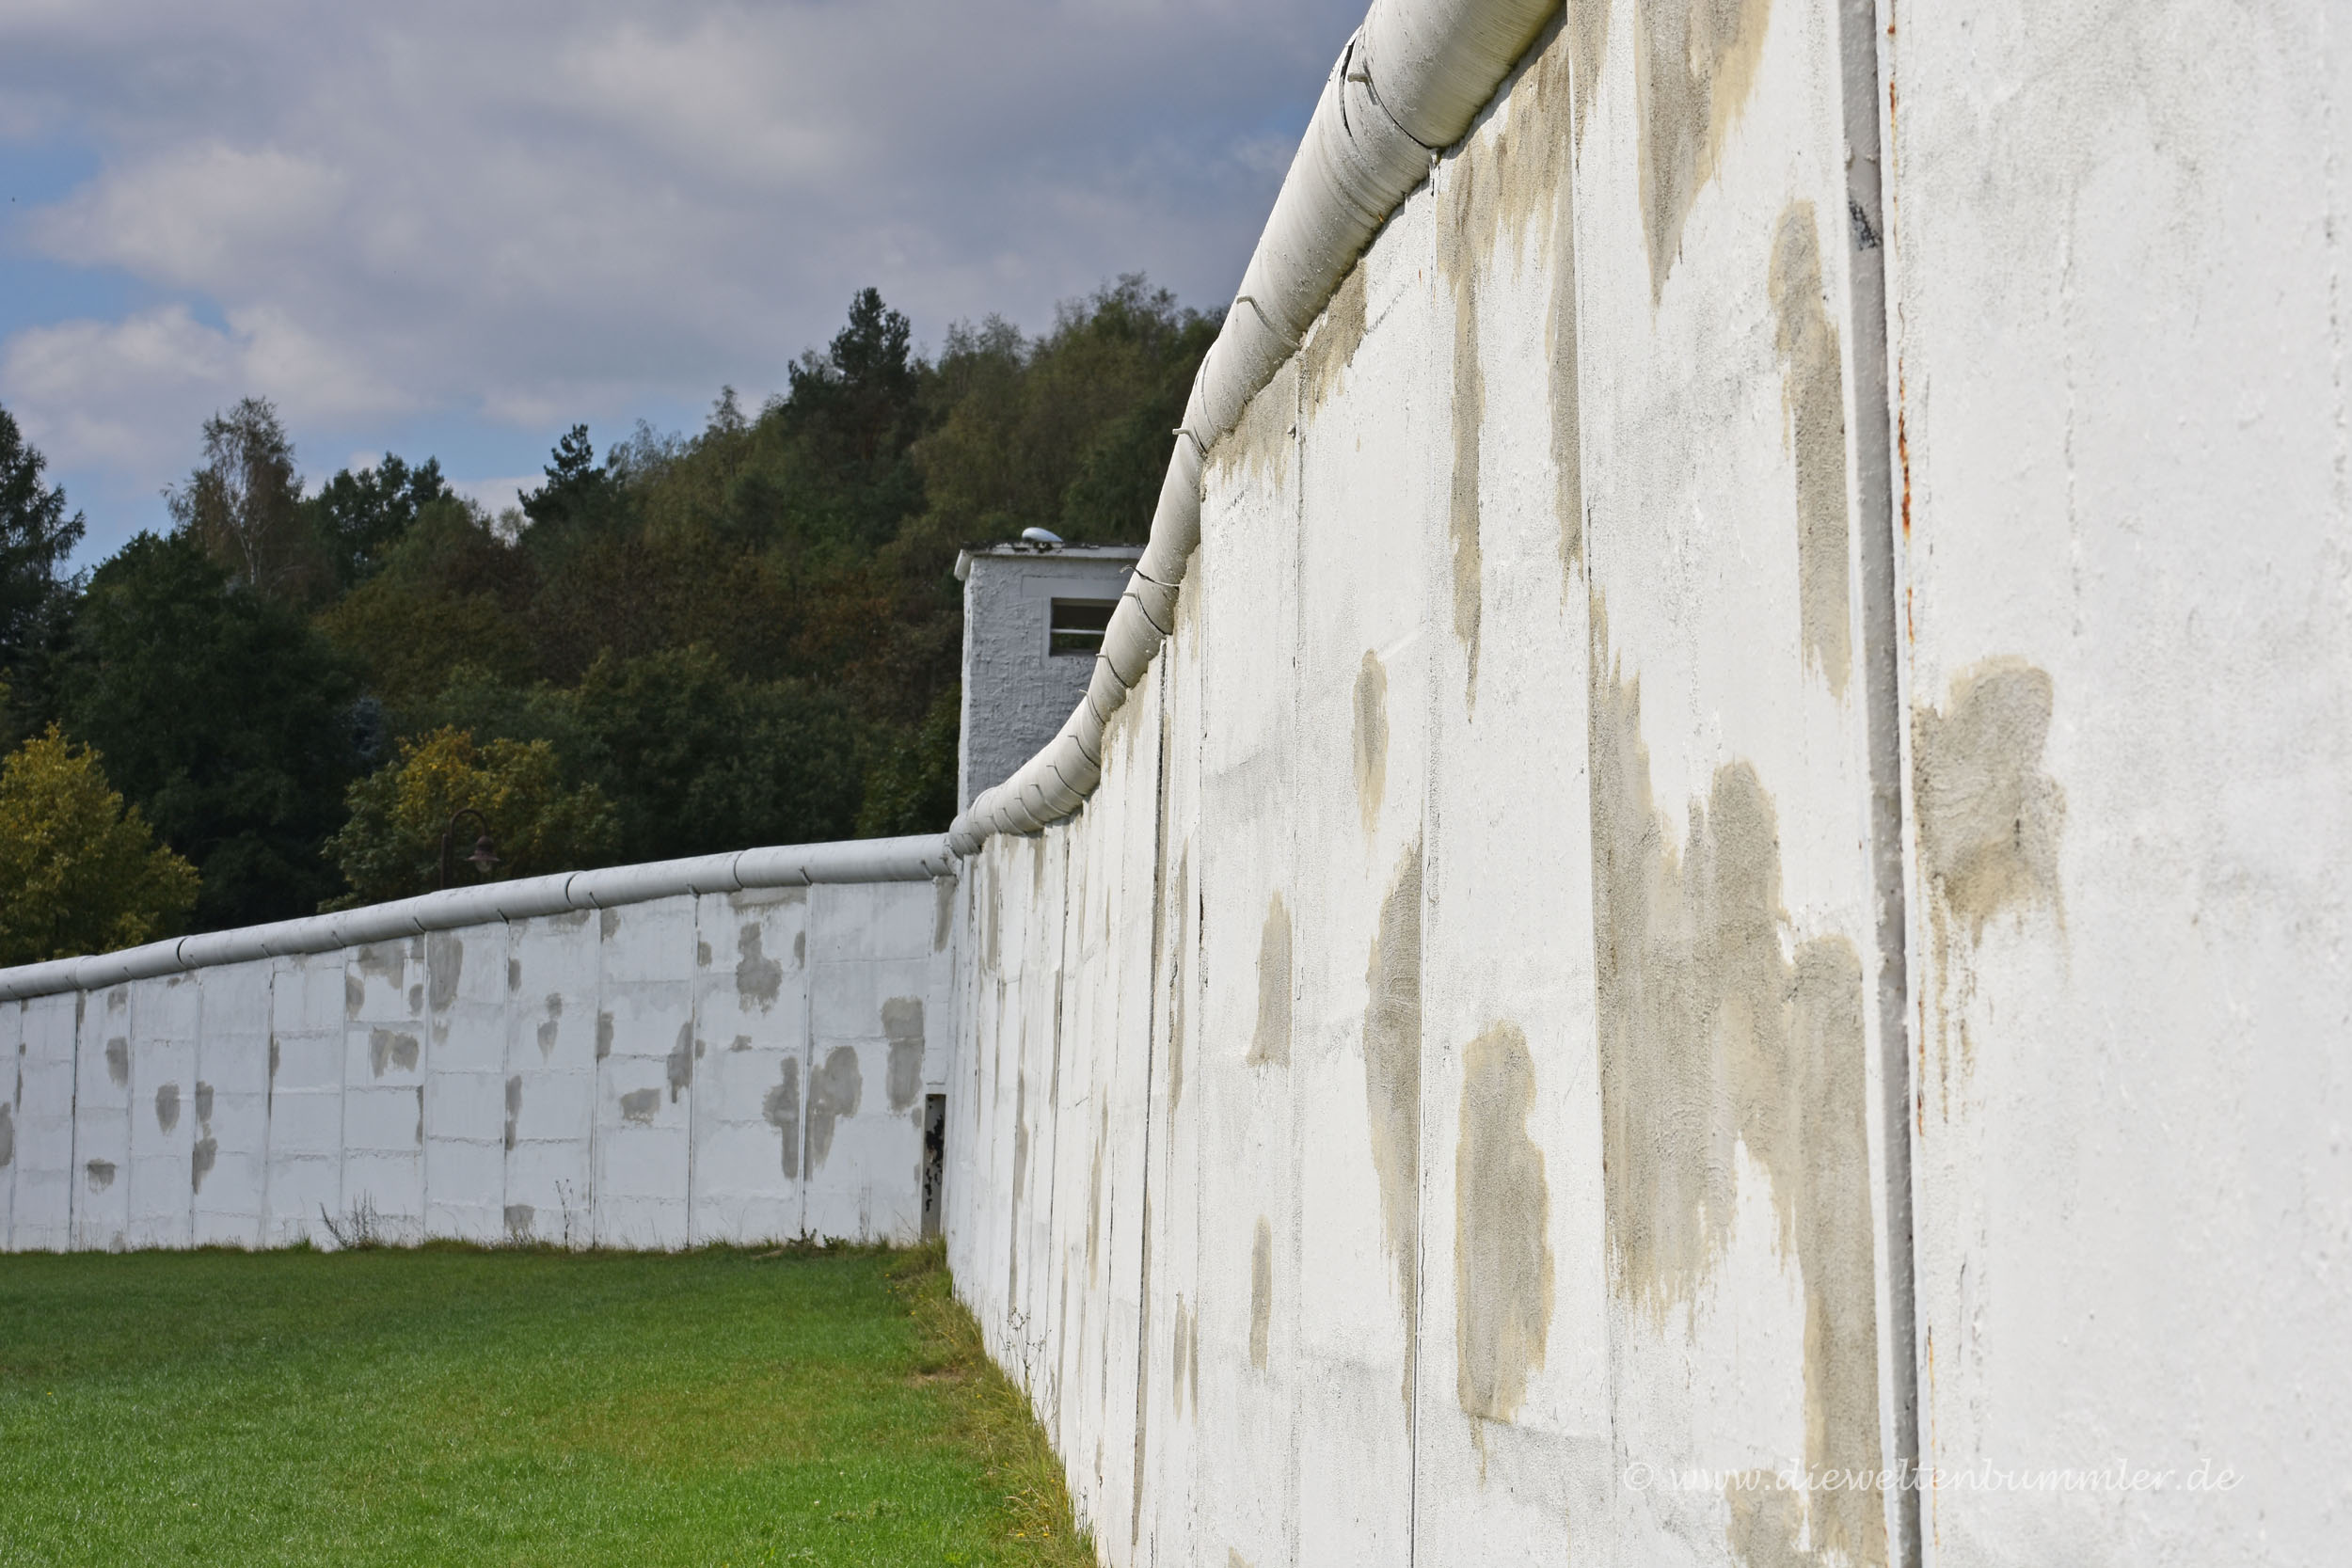 Ehemalige Mauer in Mödlareuth